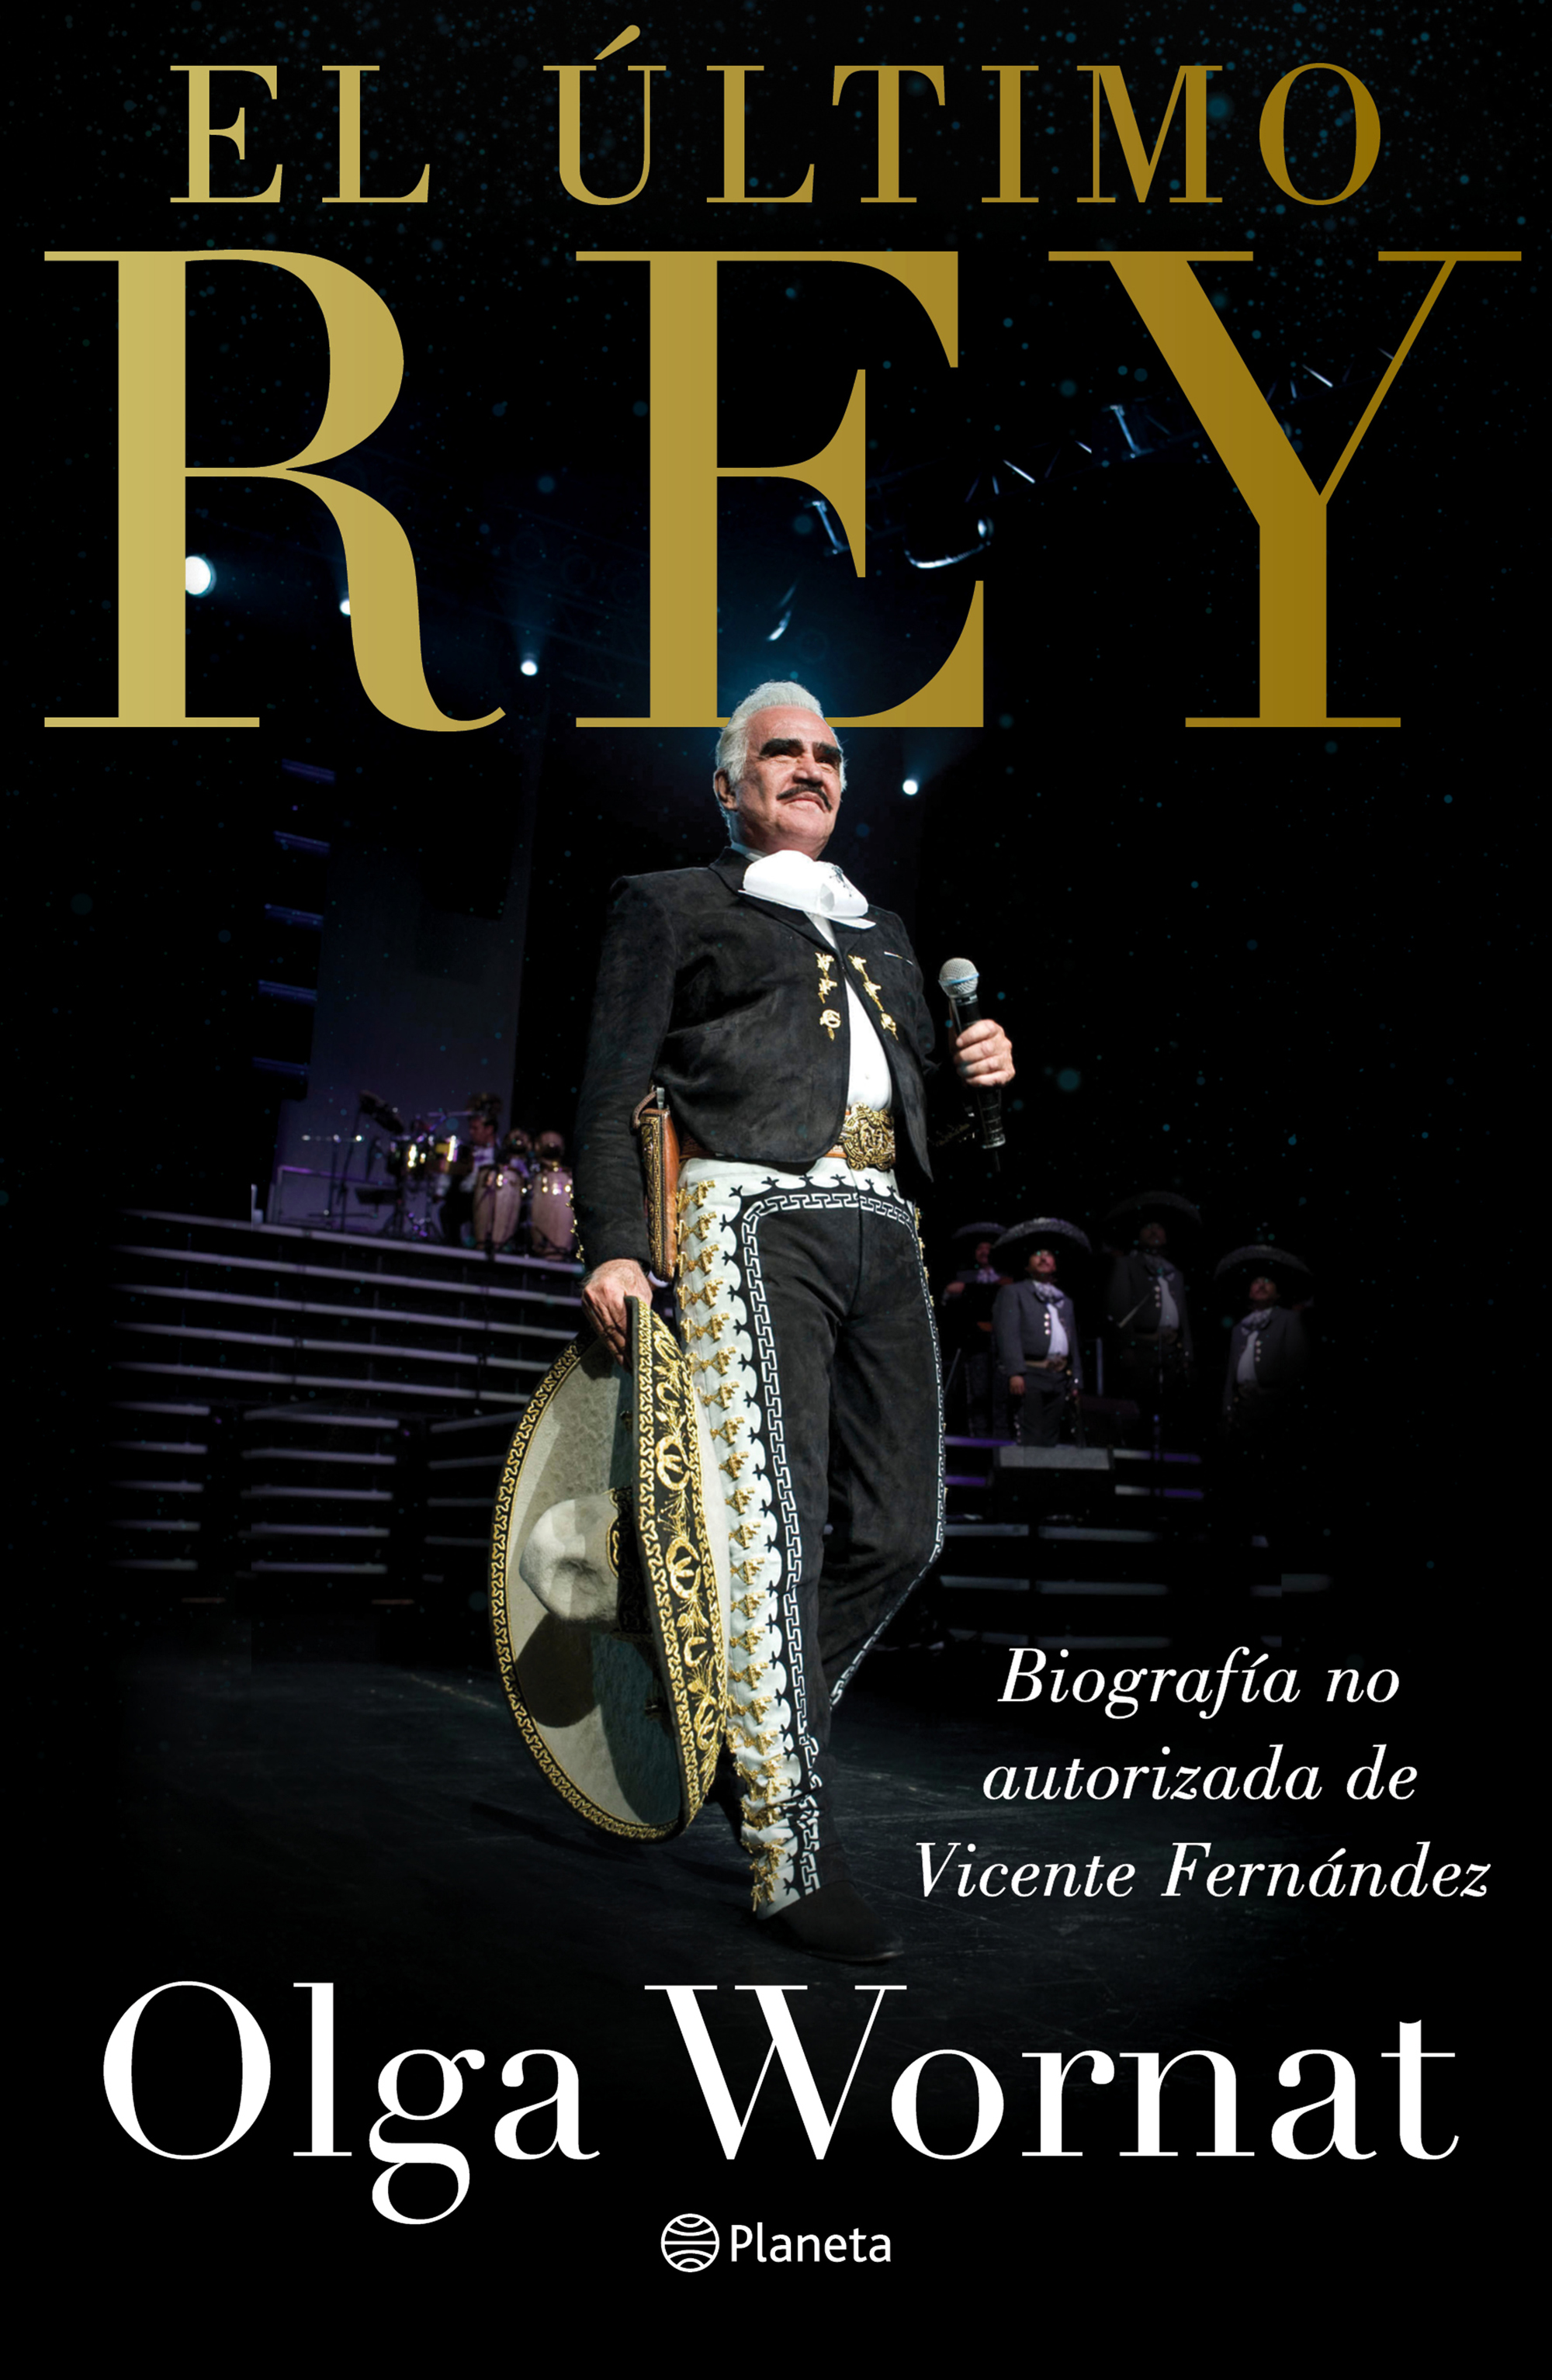 Doña Cuquita aseguró que Vicente Fernández no aprobó lo que contiene el libro "El último Rey" (Foto: Editorial Planeta)